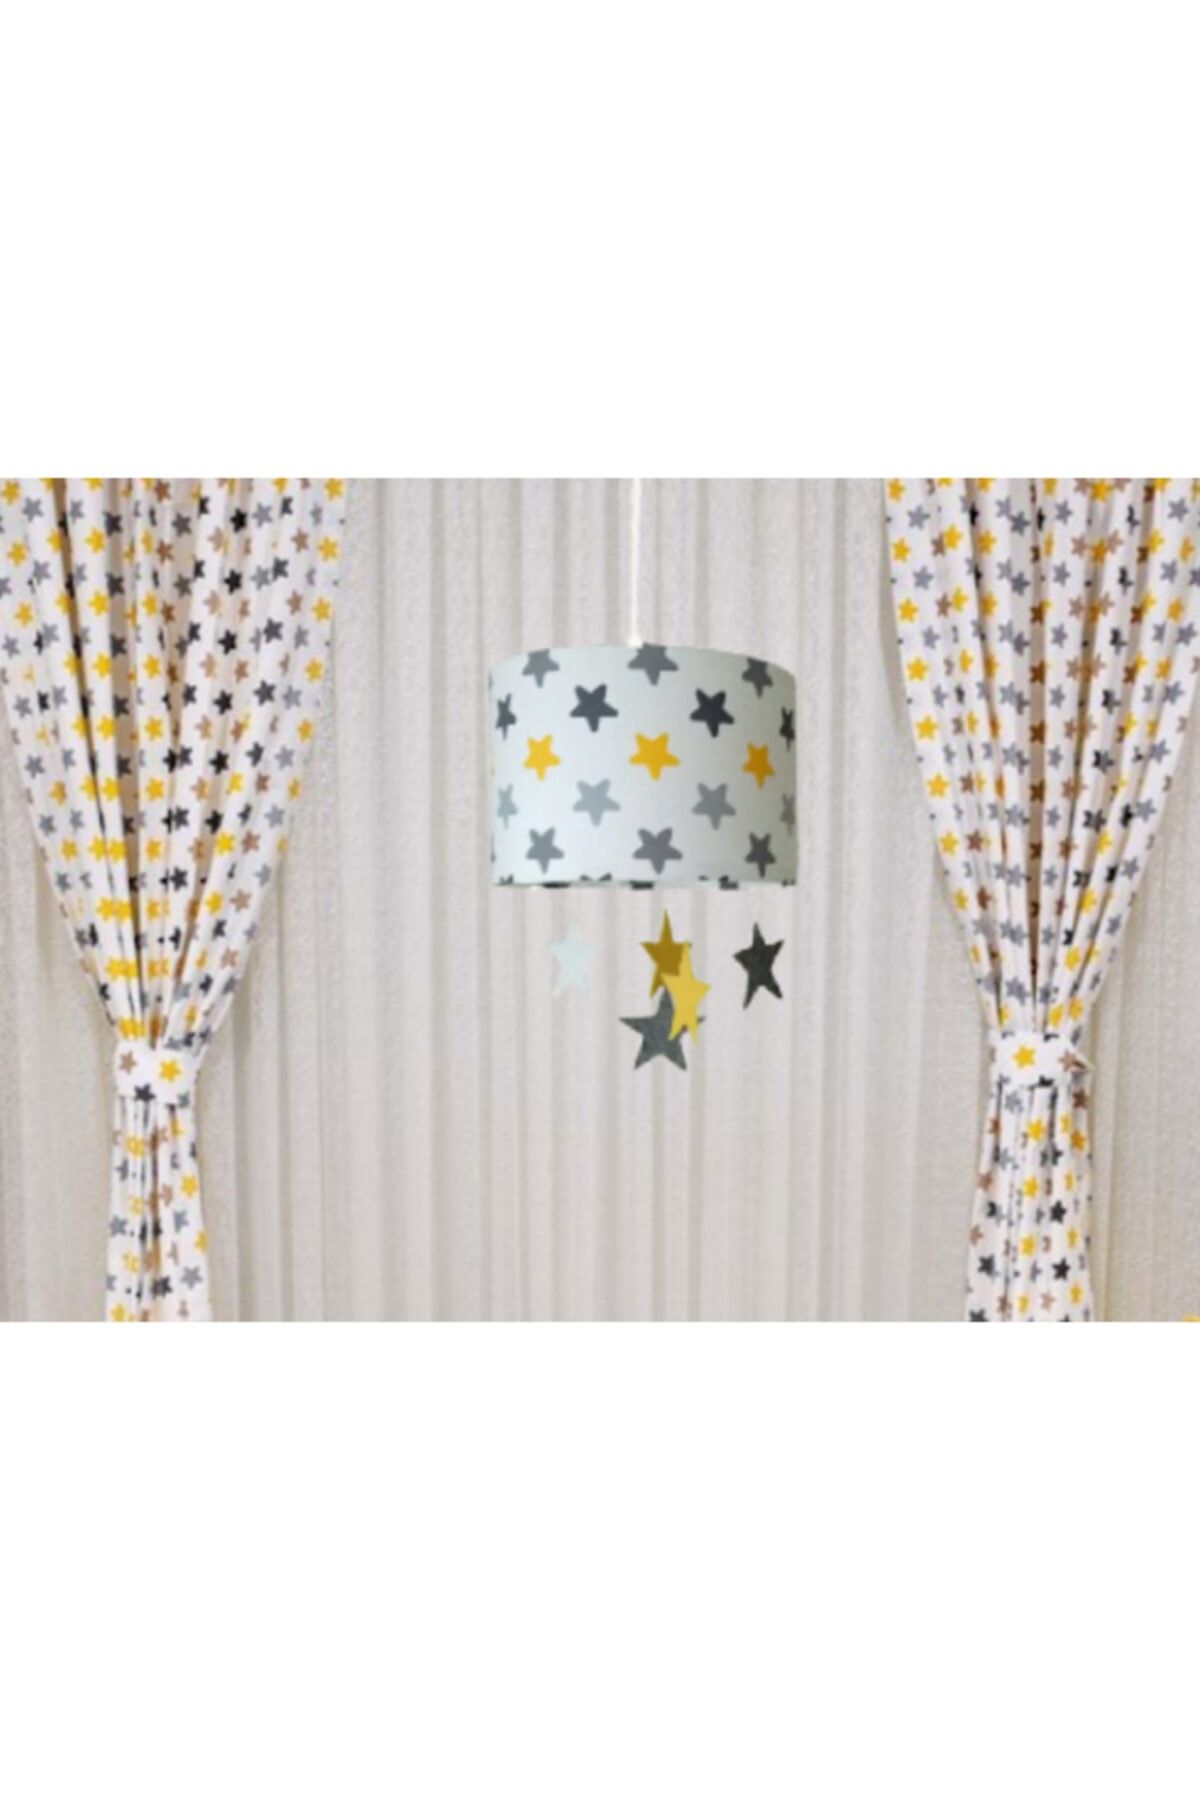 Atölye Lamp Design Çocuk Odası Bebek Odası Gri Sarı Yıldızlı Tekli Avize +fon Perde Takımı